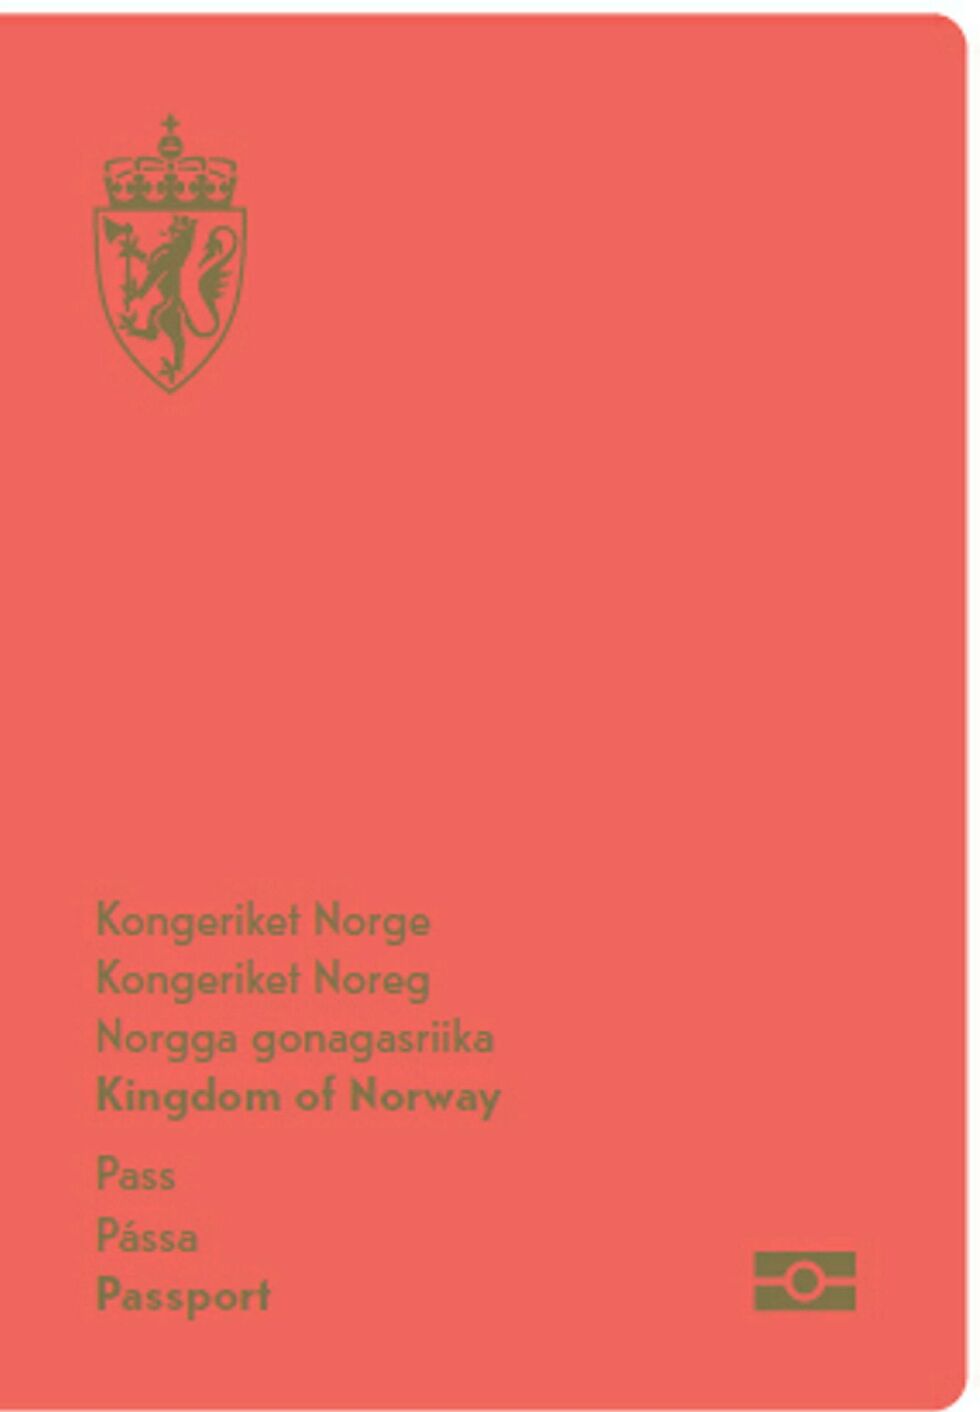 Det nye passet kommer med samisk tekst. Illustrasjon: Politidirektoratet